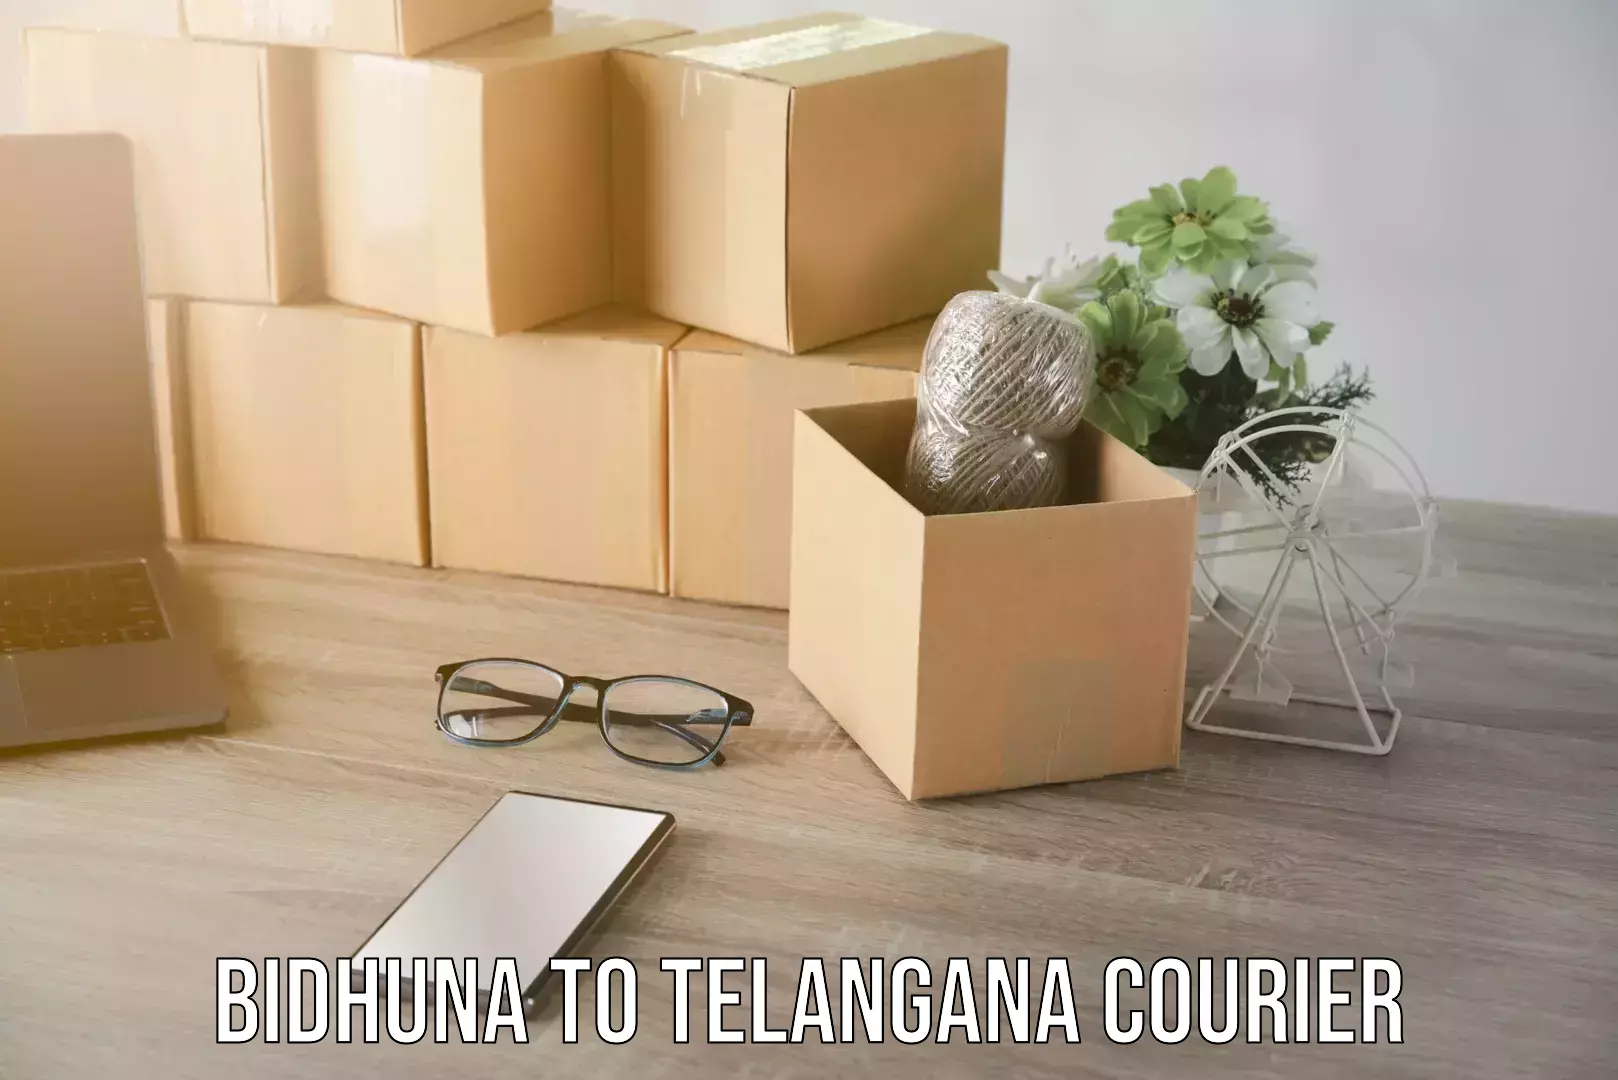 Supply chain efficiency Bidhuna to Telangana